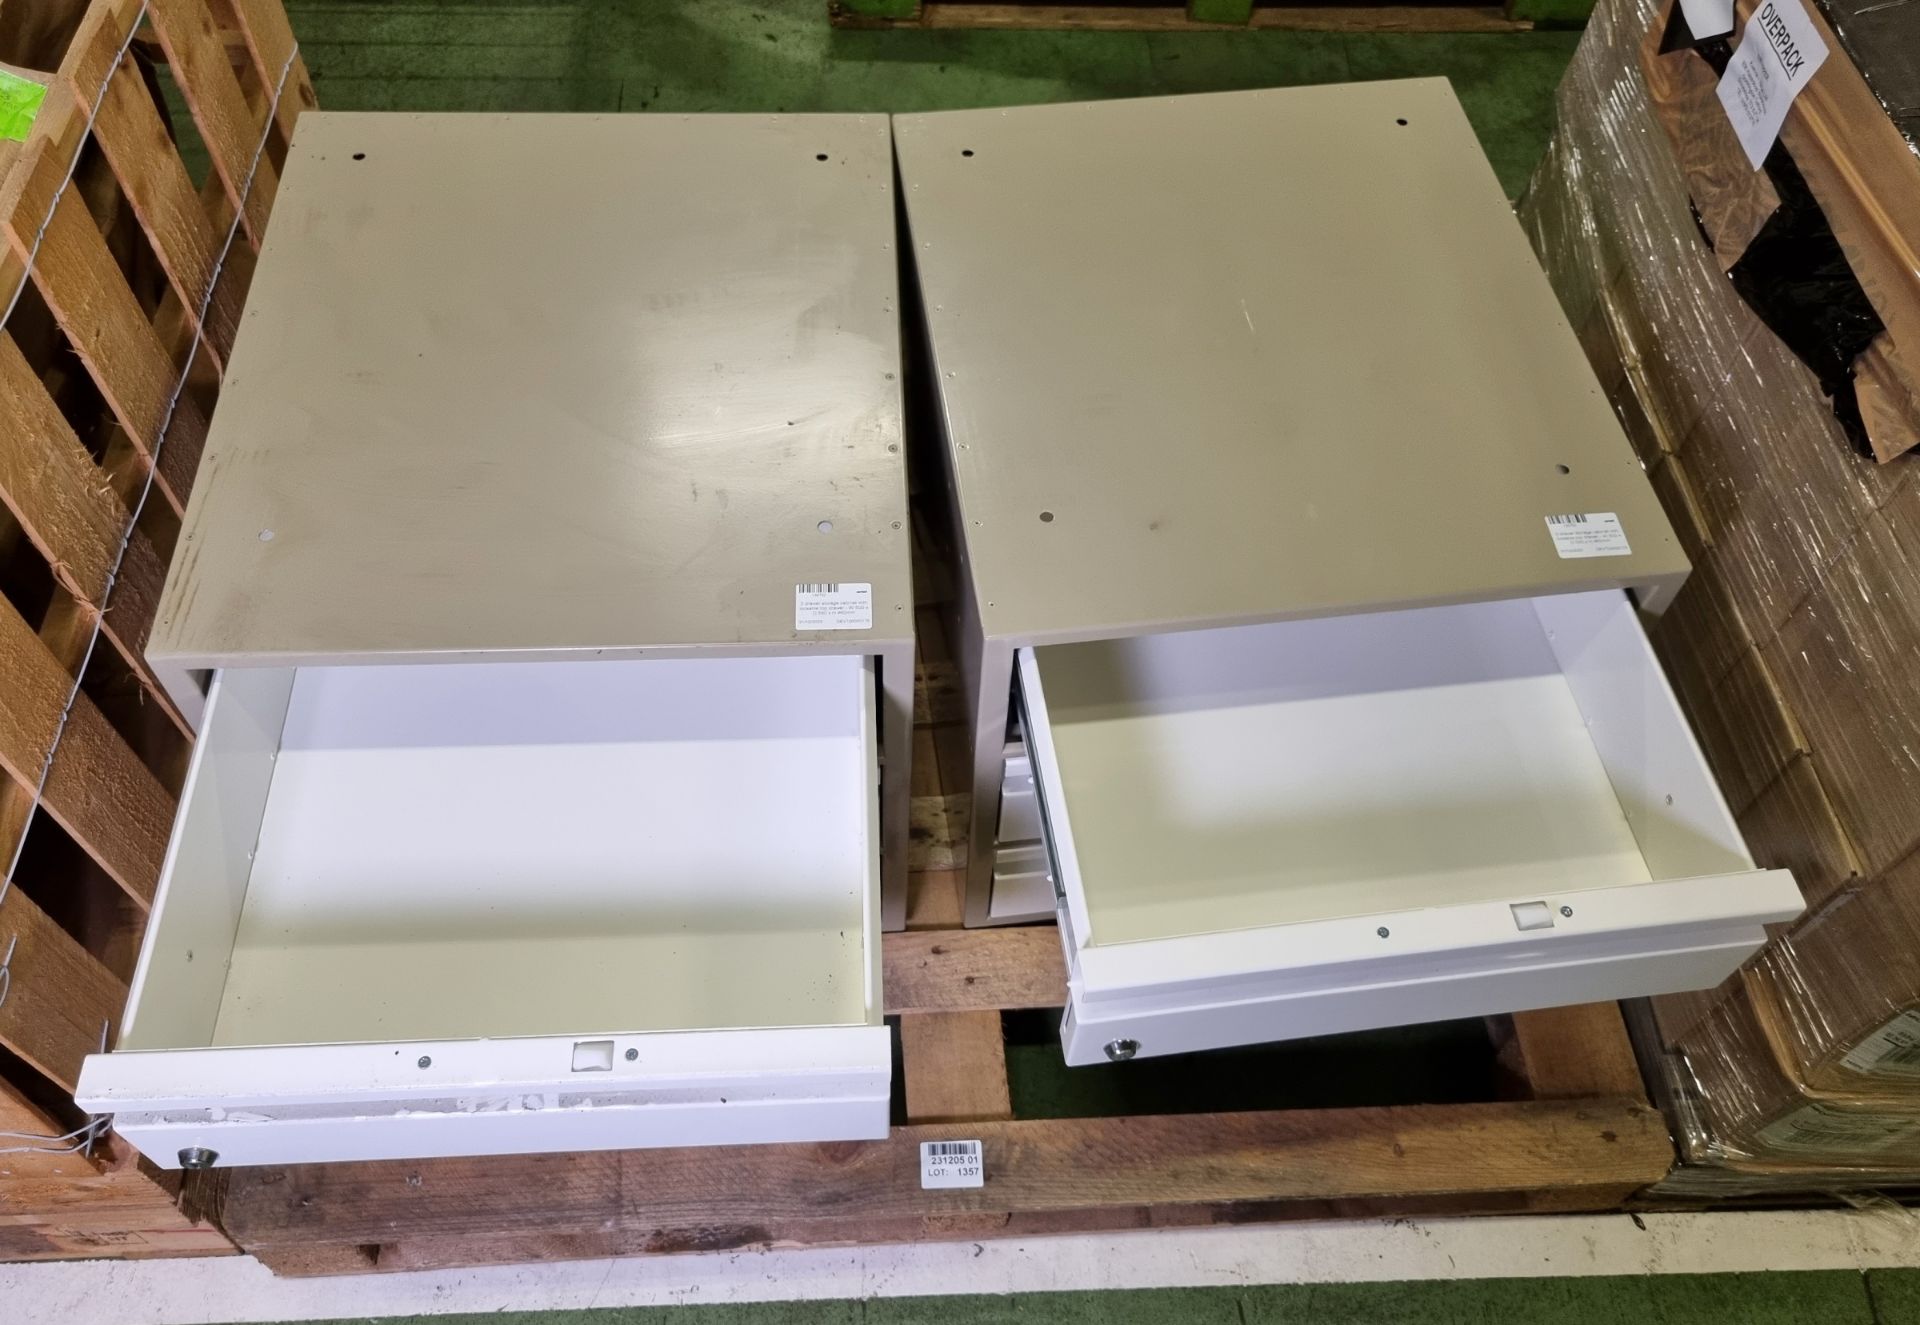 2x 3 drawer storage cabinets with lockable top drawer - W 500 x D 560 x H 460mm - Bild 3 aus 4